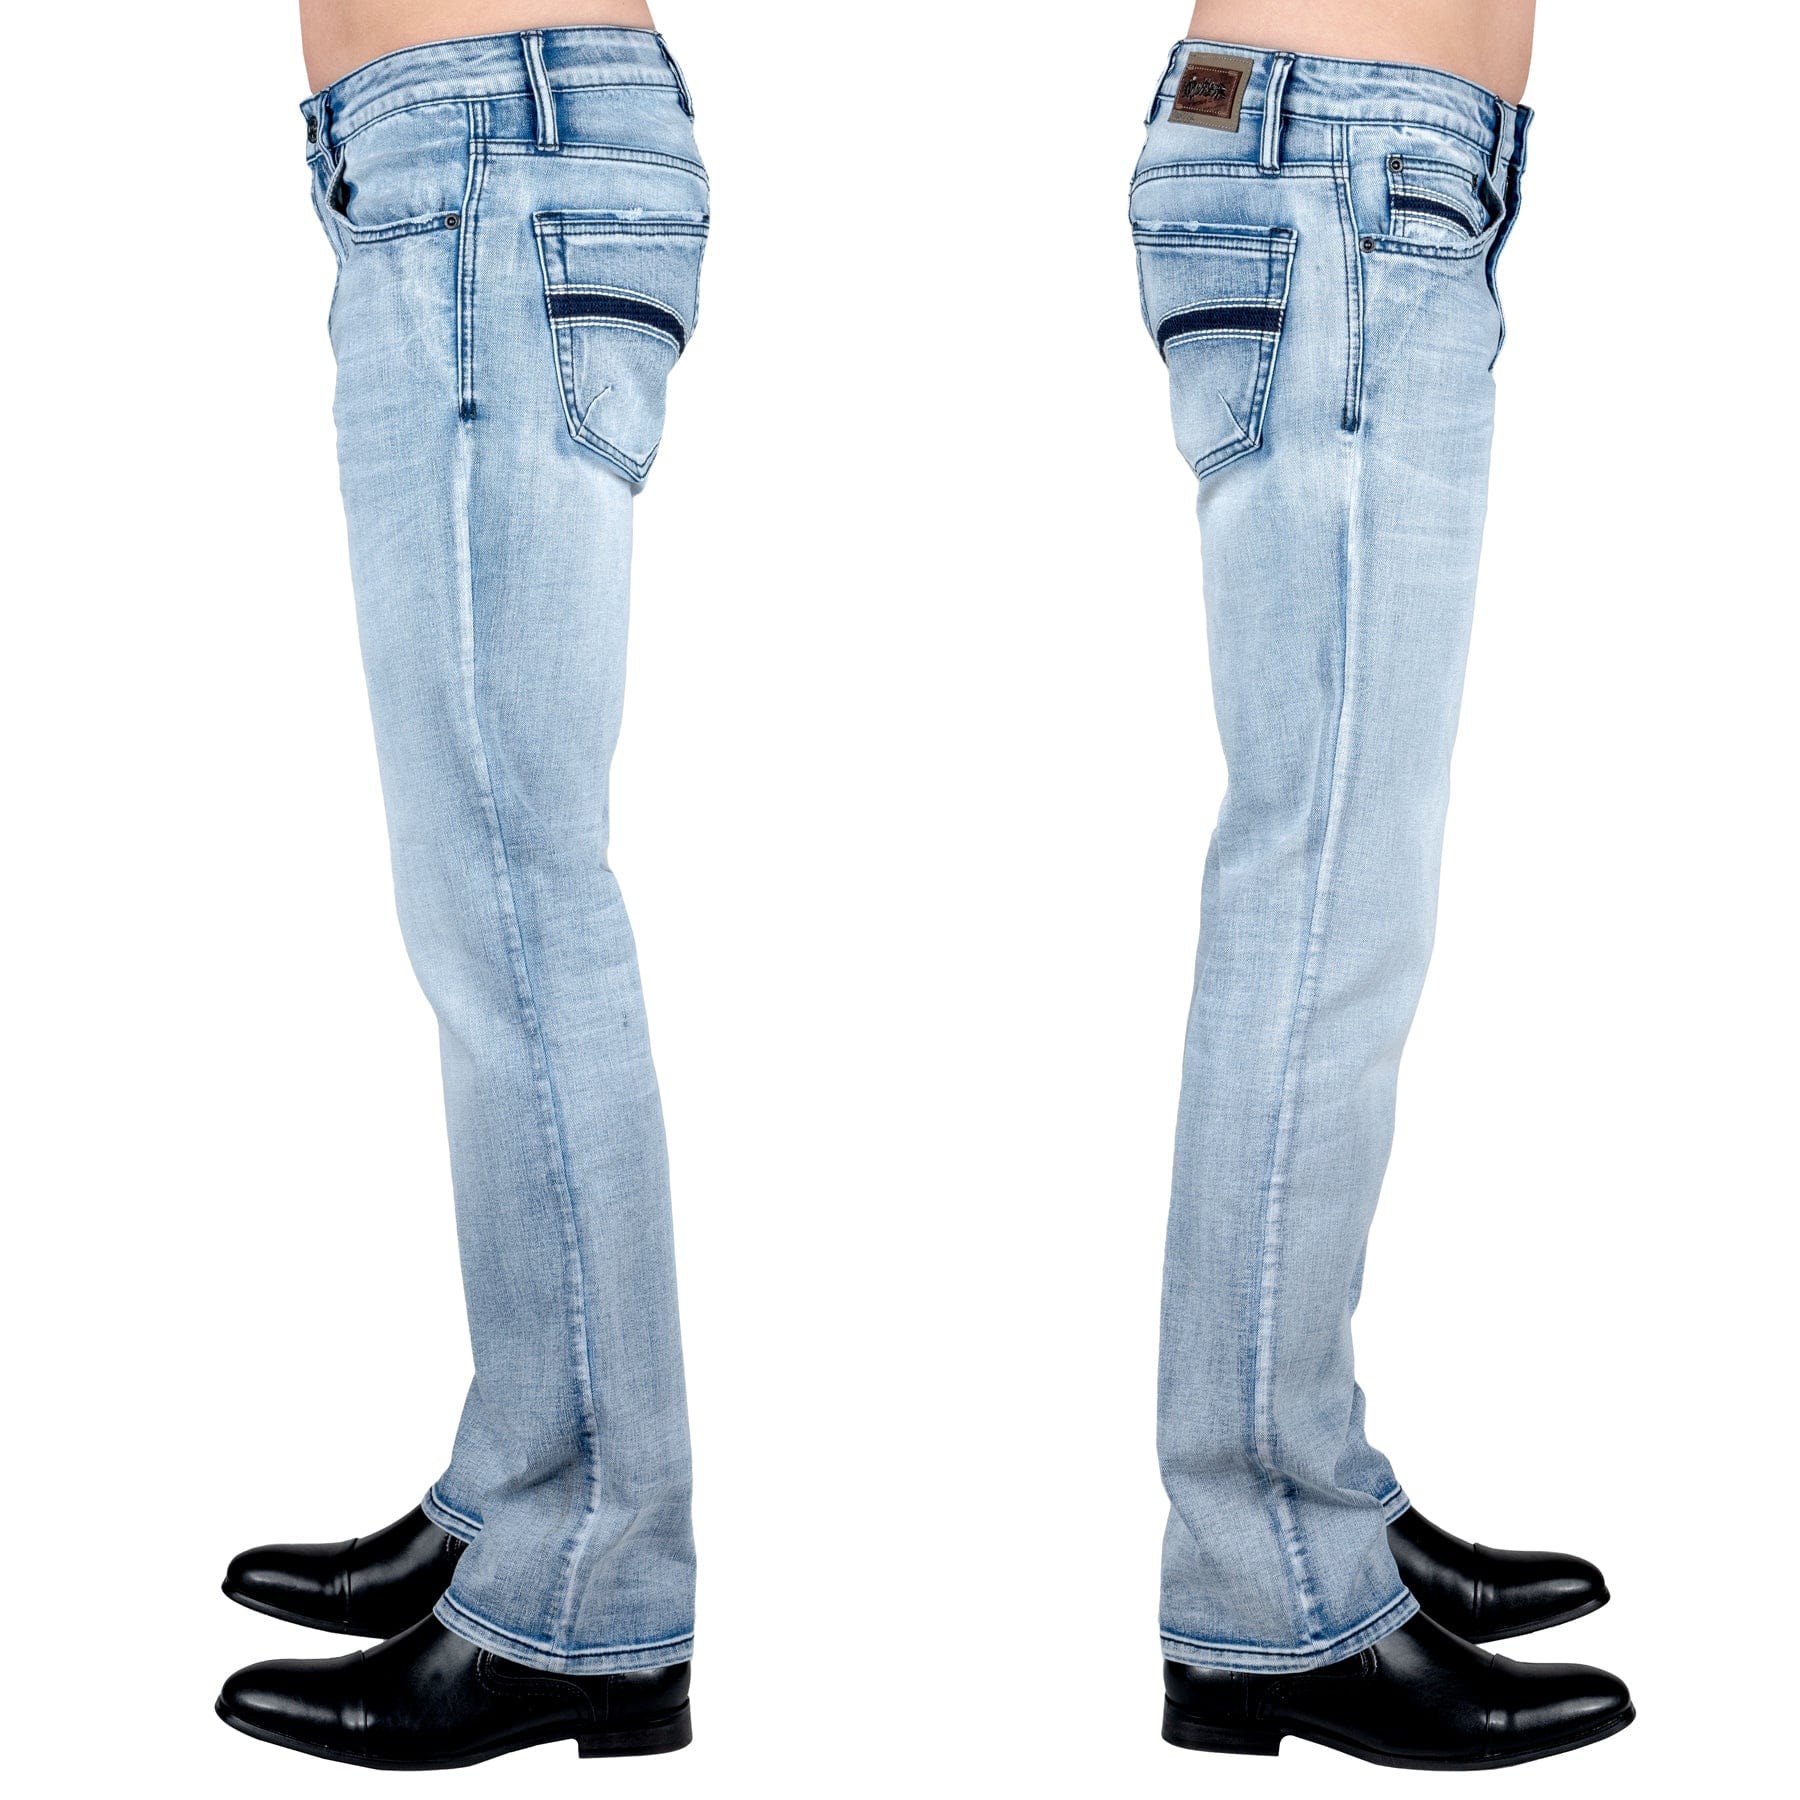 Essentials Collection Pants Trailblazer Jeans - Classic Blue